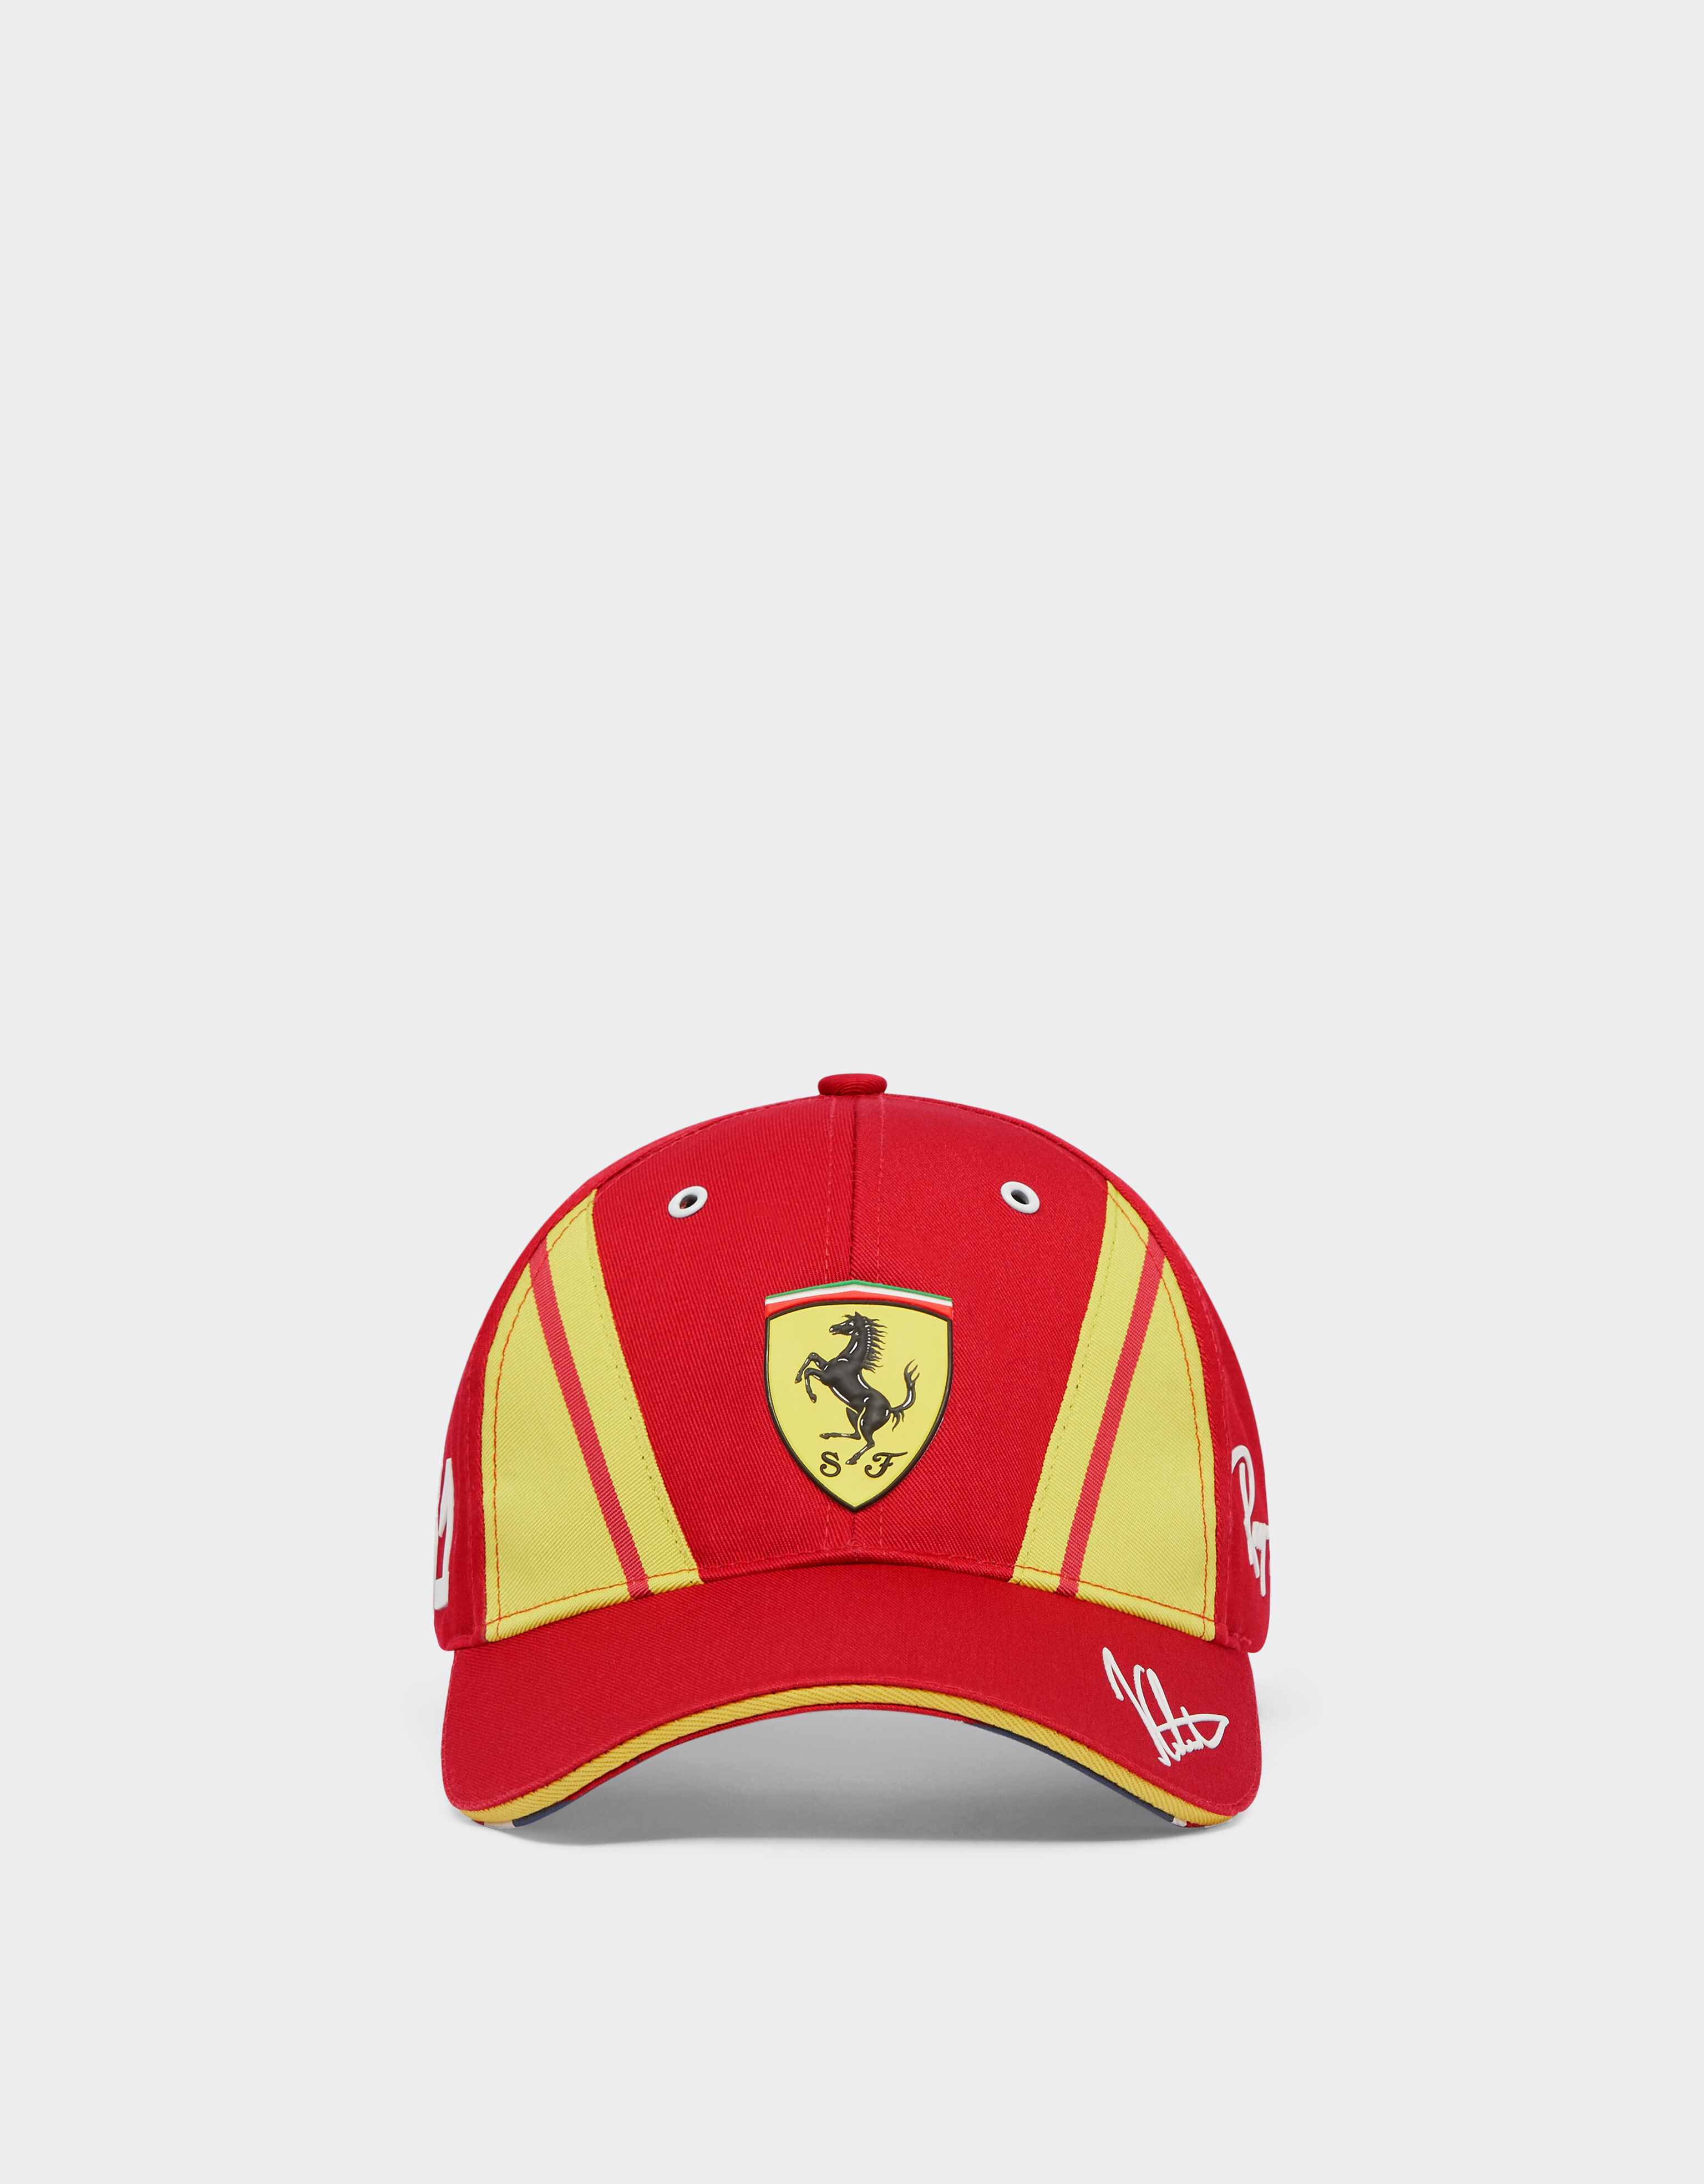 ${brand} Gorra Calado Ferrari Hypercar - Edición limitada ${colorDescription} ${masterID}